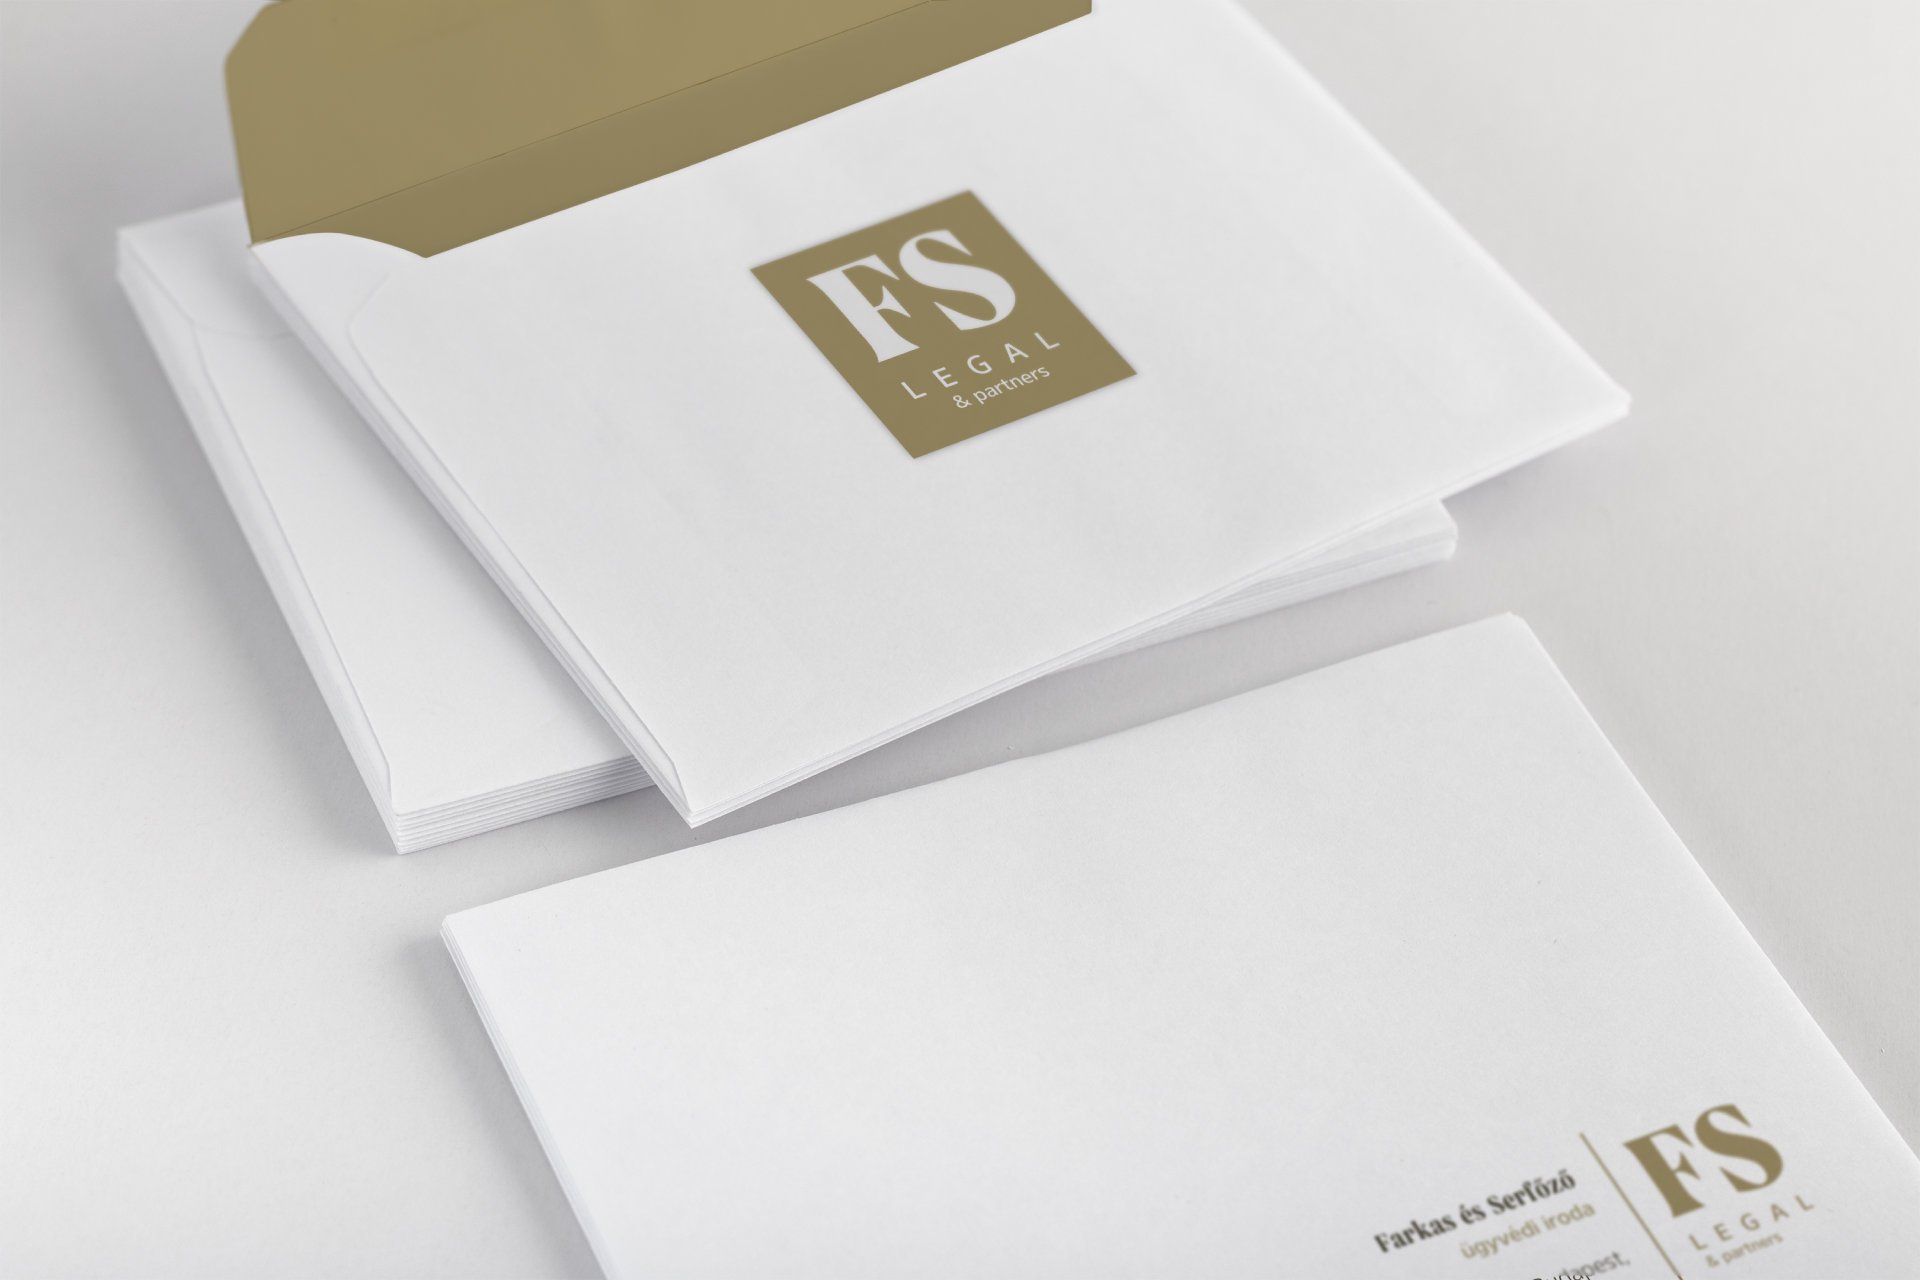 FS Legal branding envelope design